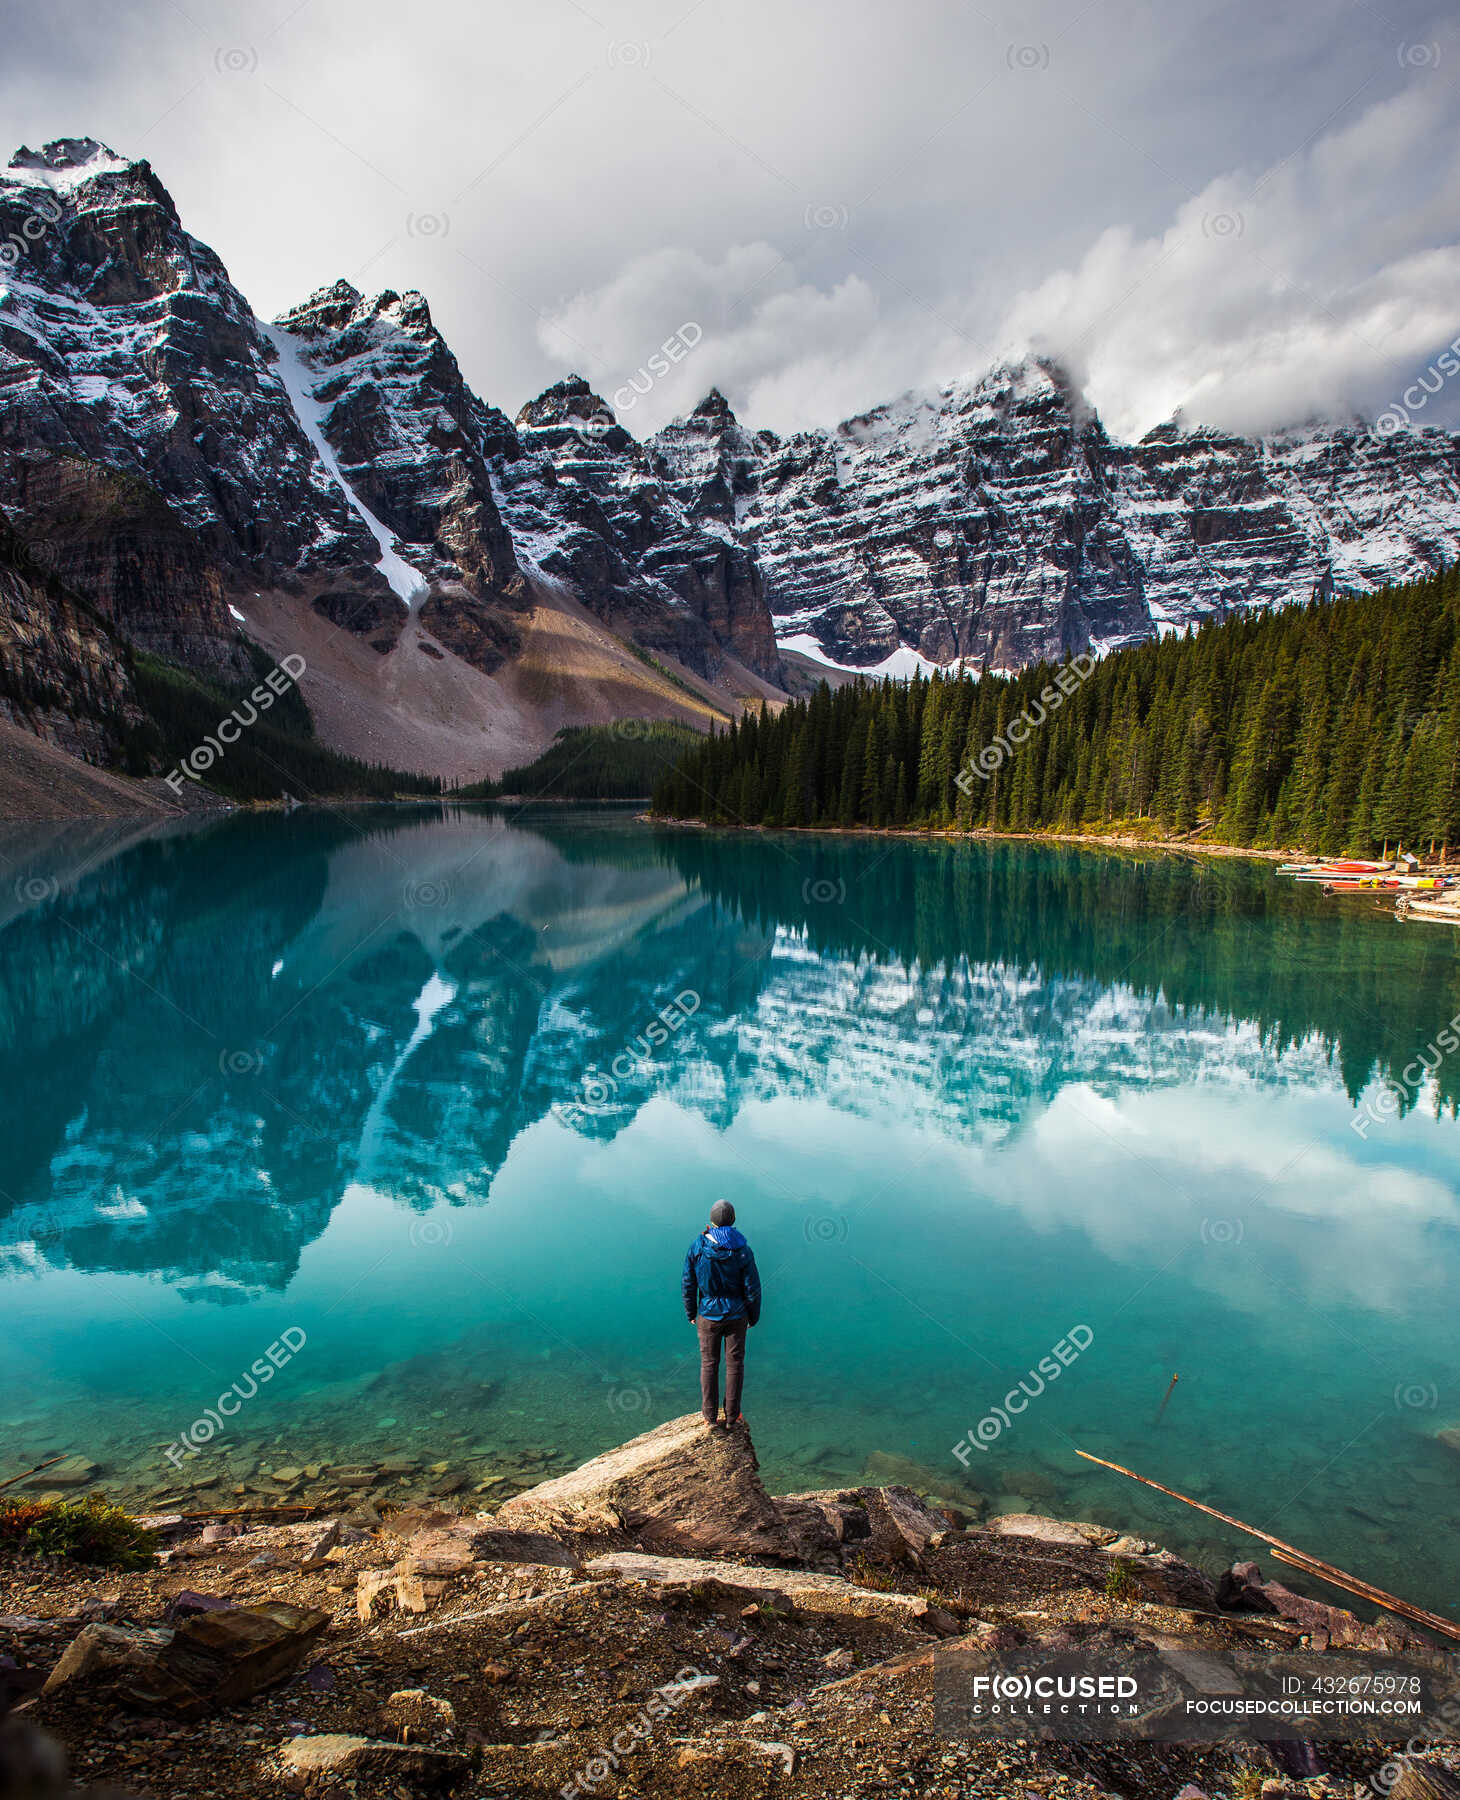 Bellissimo paesaggio e lago con l'uomo sullo sfondo della natura — una  persona, Vista - Stock Photo | #432675978